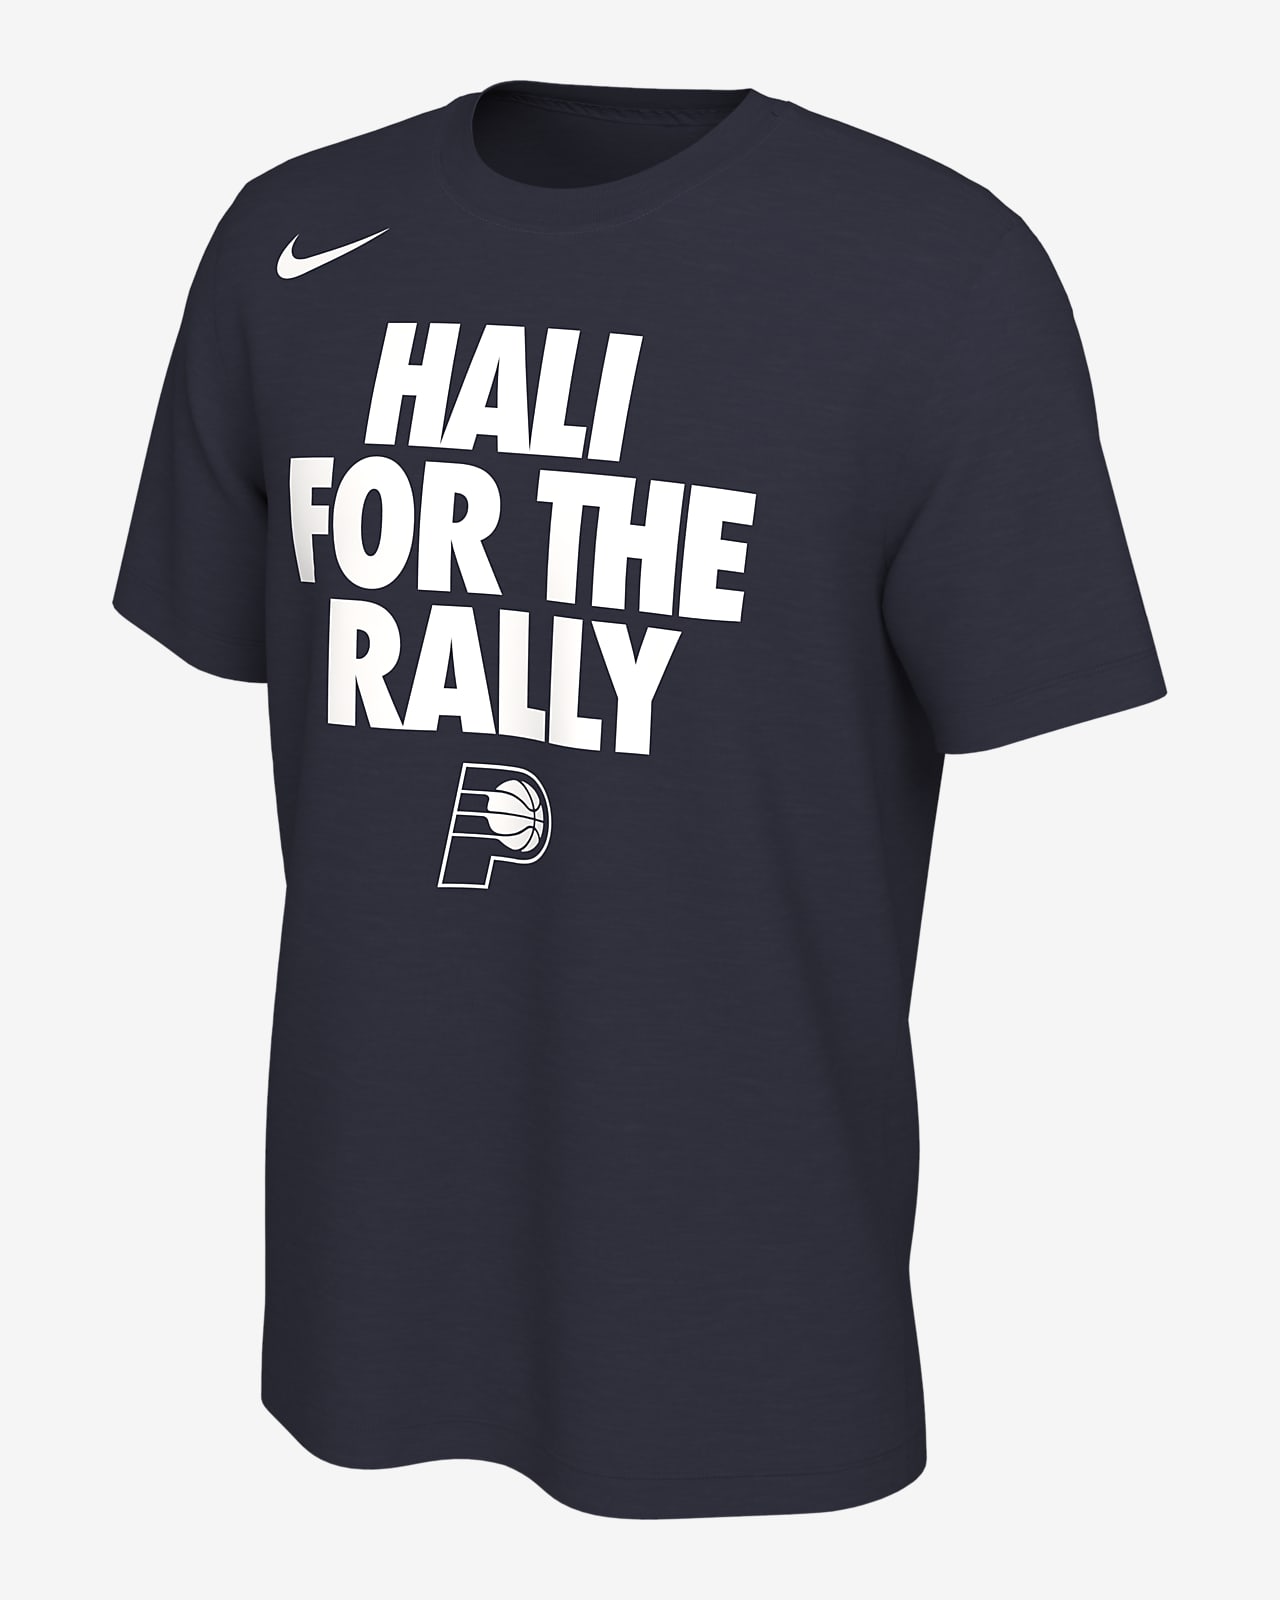 Tyrese Haliburton Indiana Pacers Men's Nike NBA T-Shirt